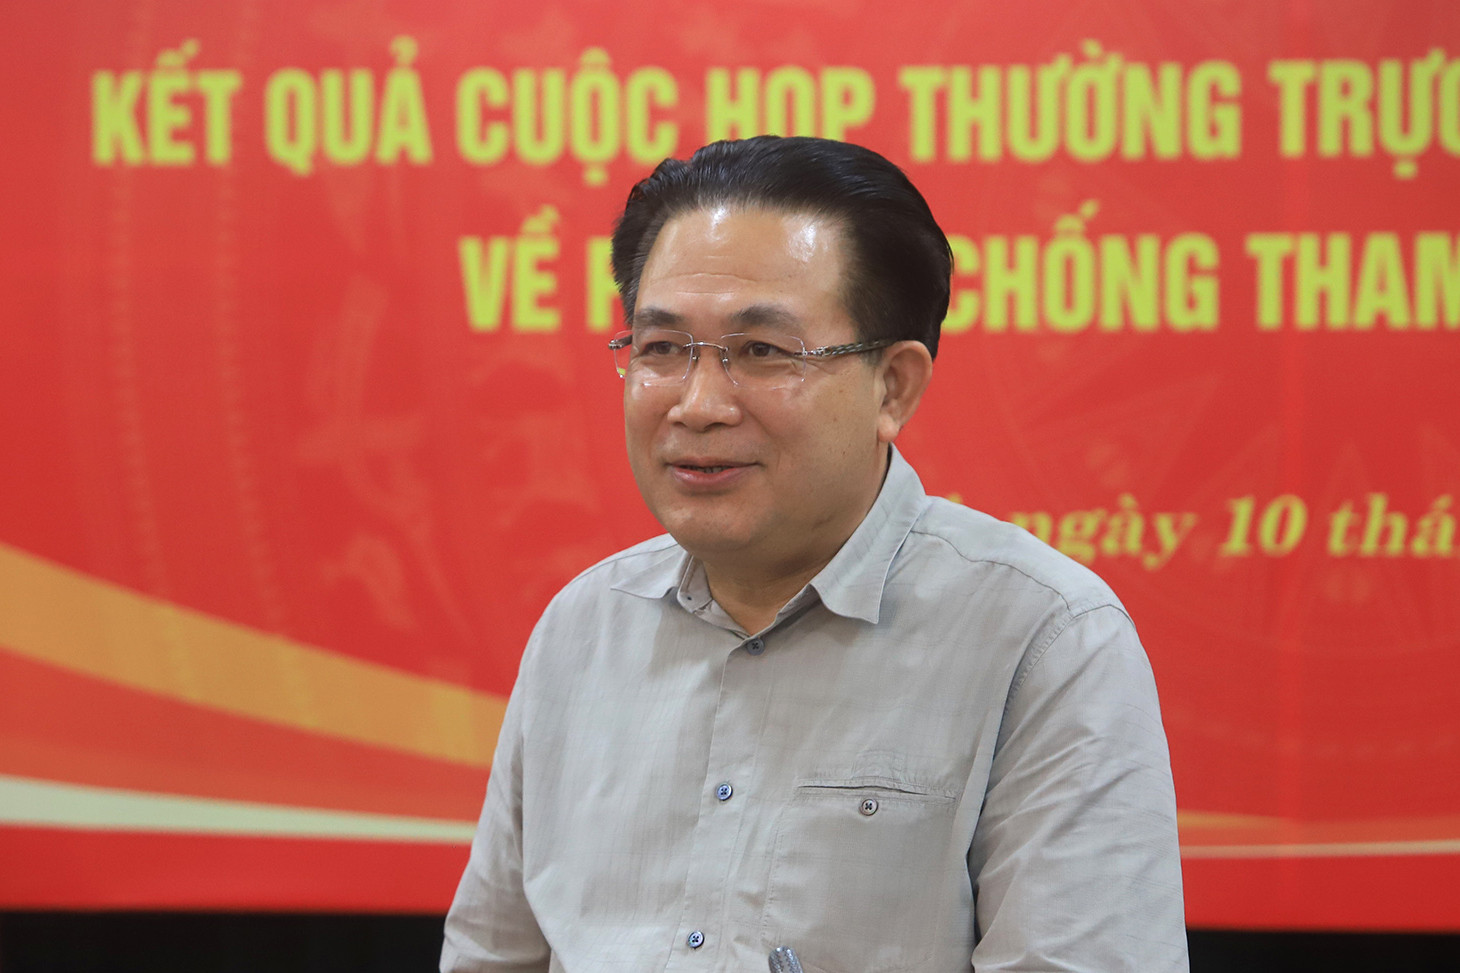 Chưa bắt được bà Nguyễn Thị Thanh Nhàn, không có chuyện bắt được ...